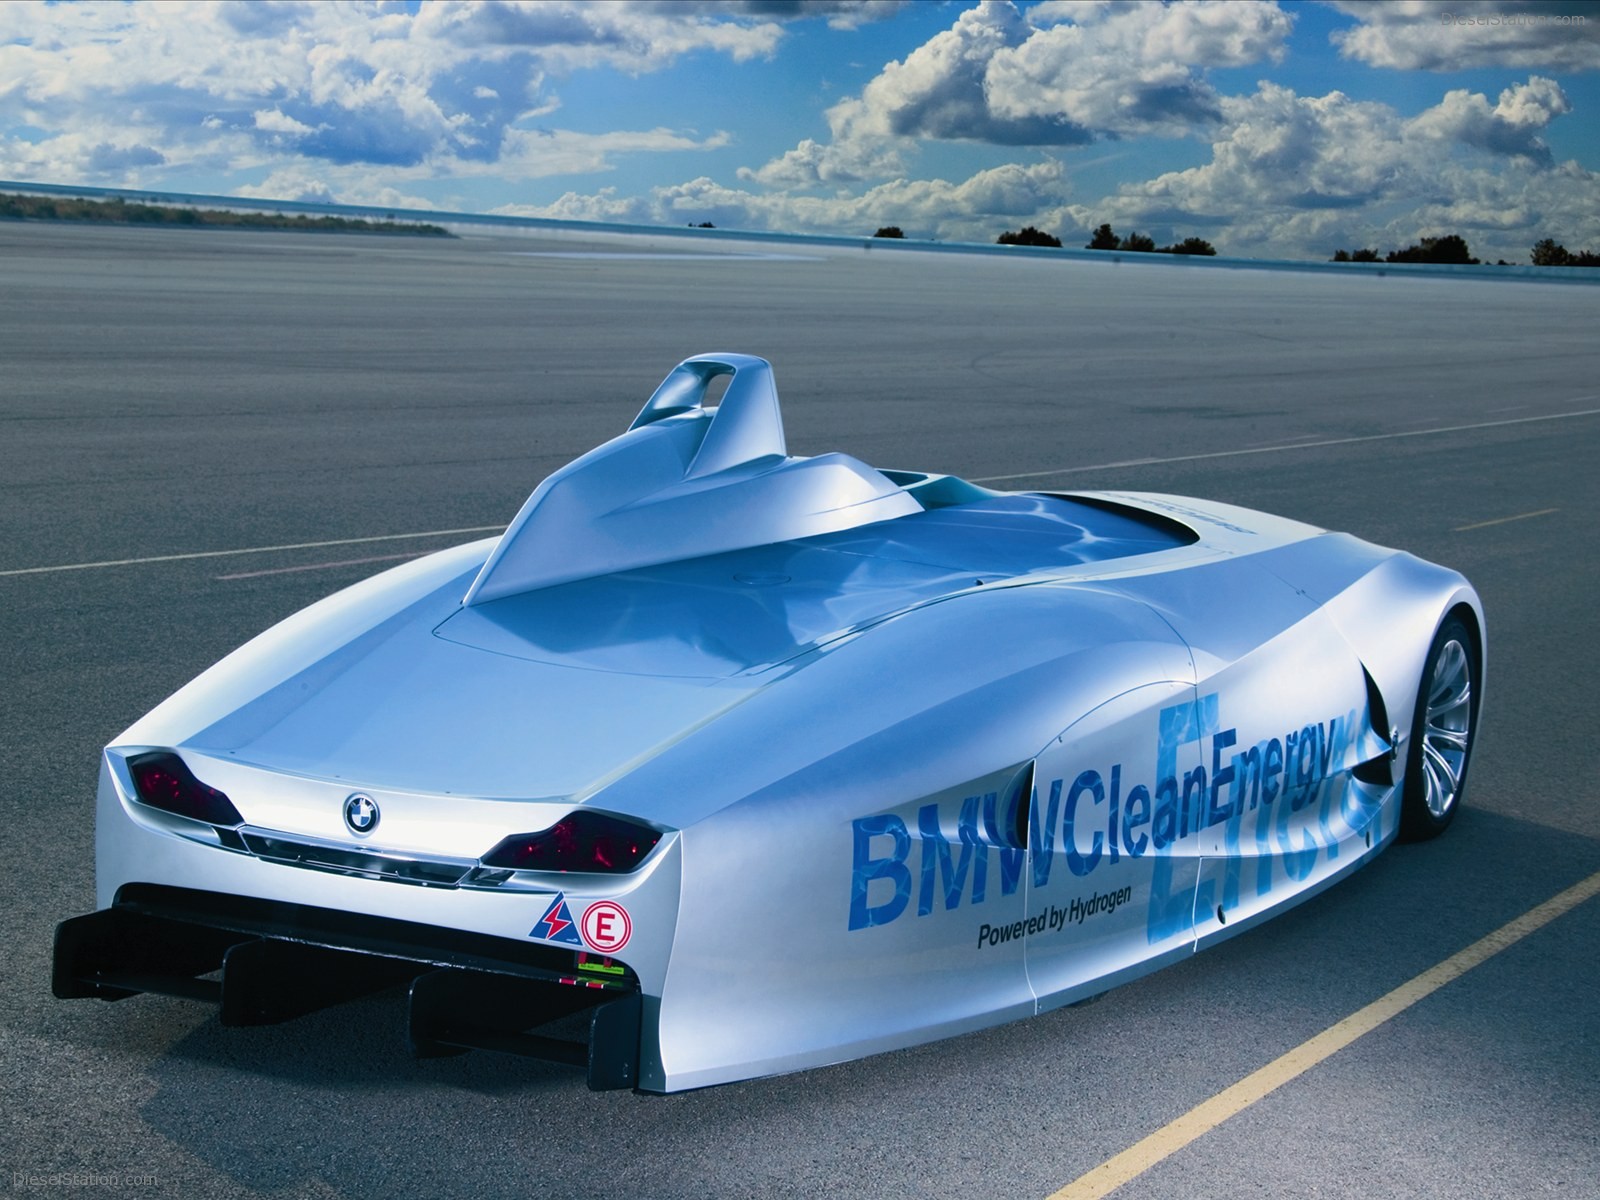 Bmw H2r Hydrogen Racecar - Bmw Hydrogen Race Car - HD Wallpaper 